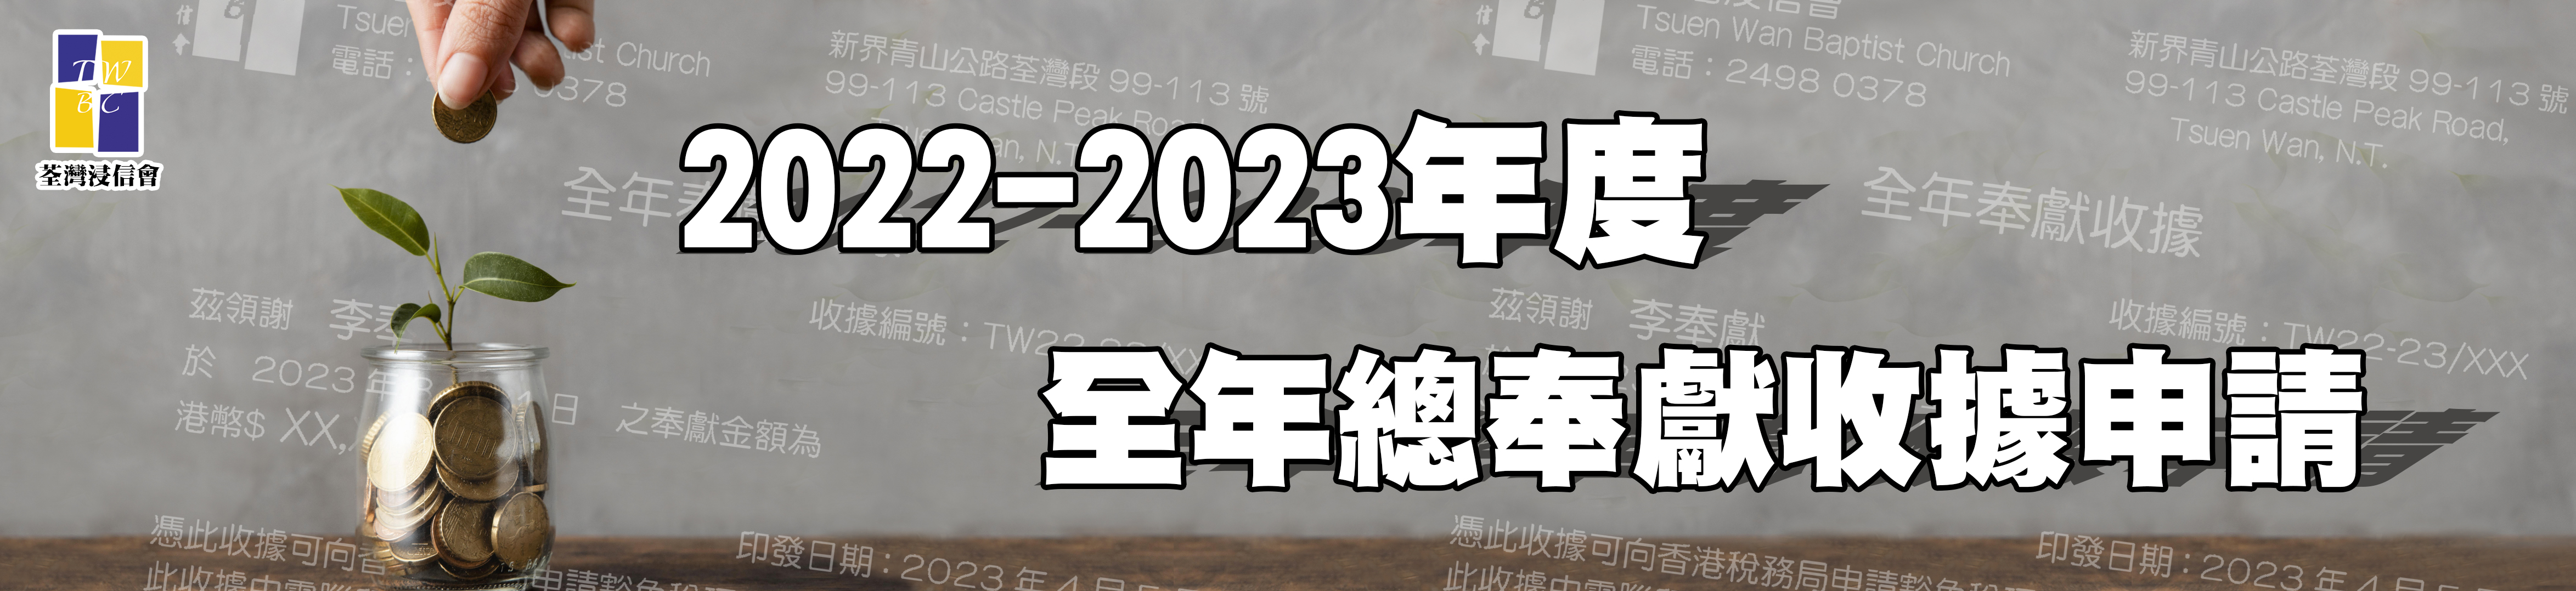 2022-2023年度全年總奉獻收據申請